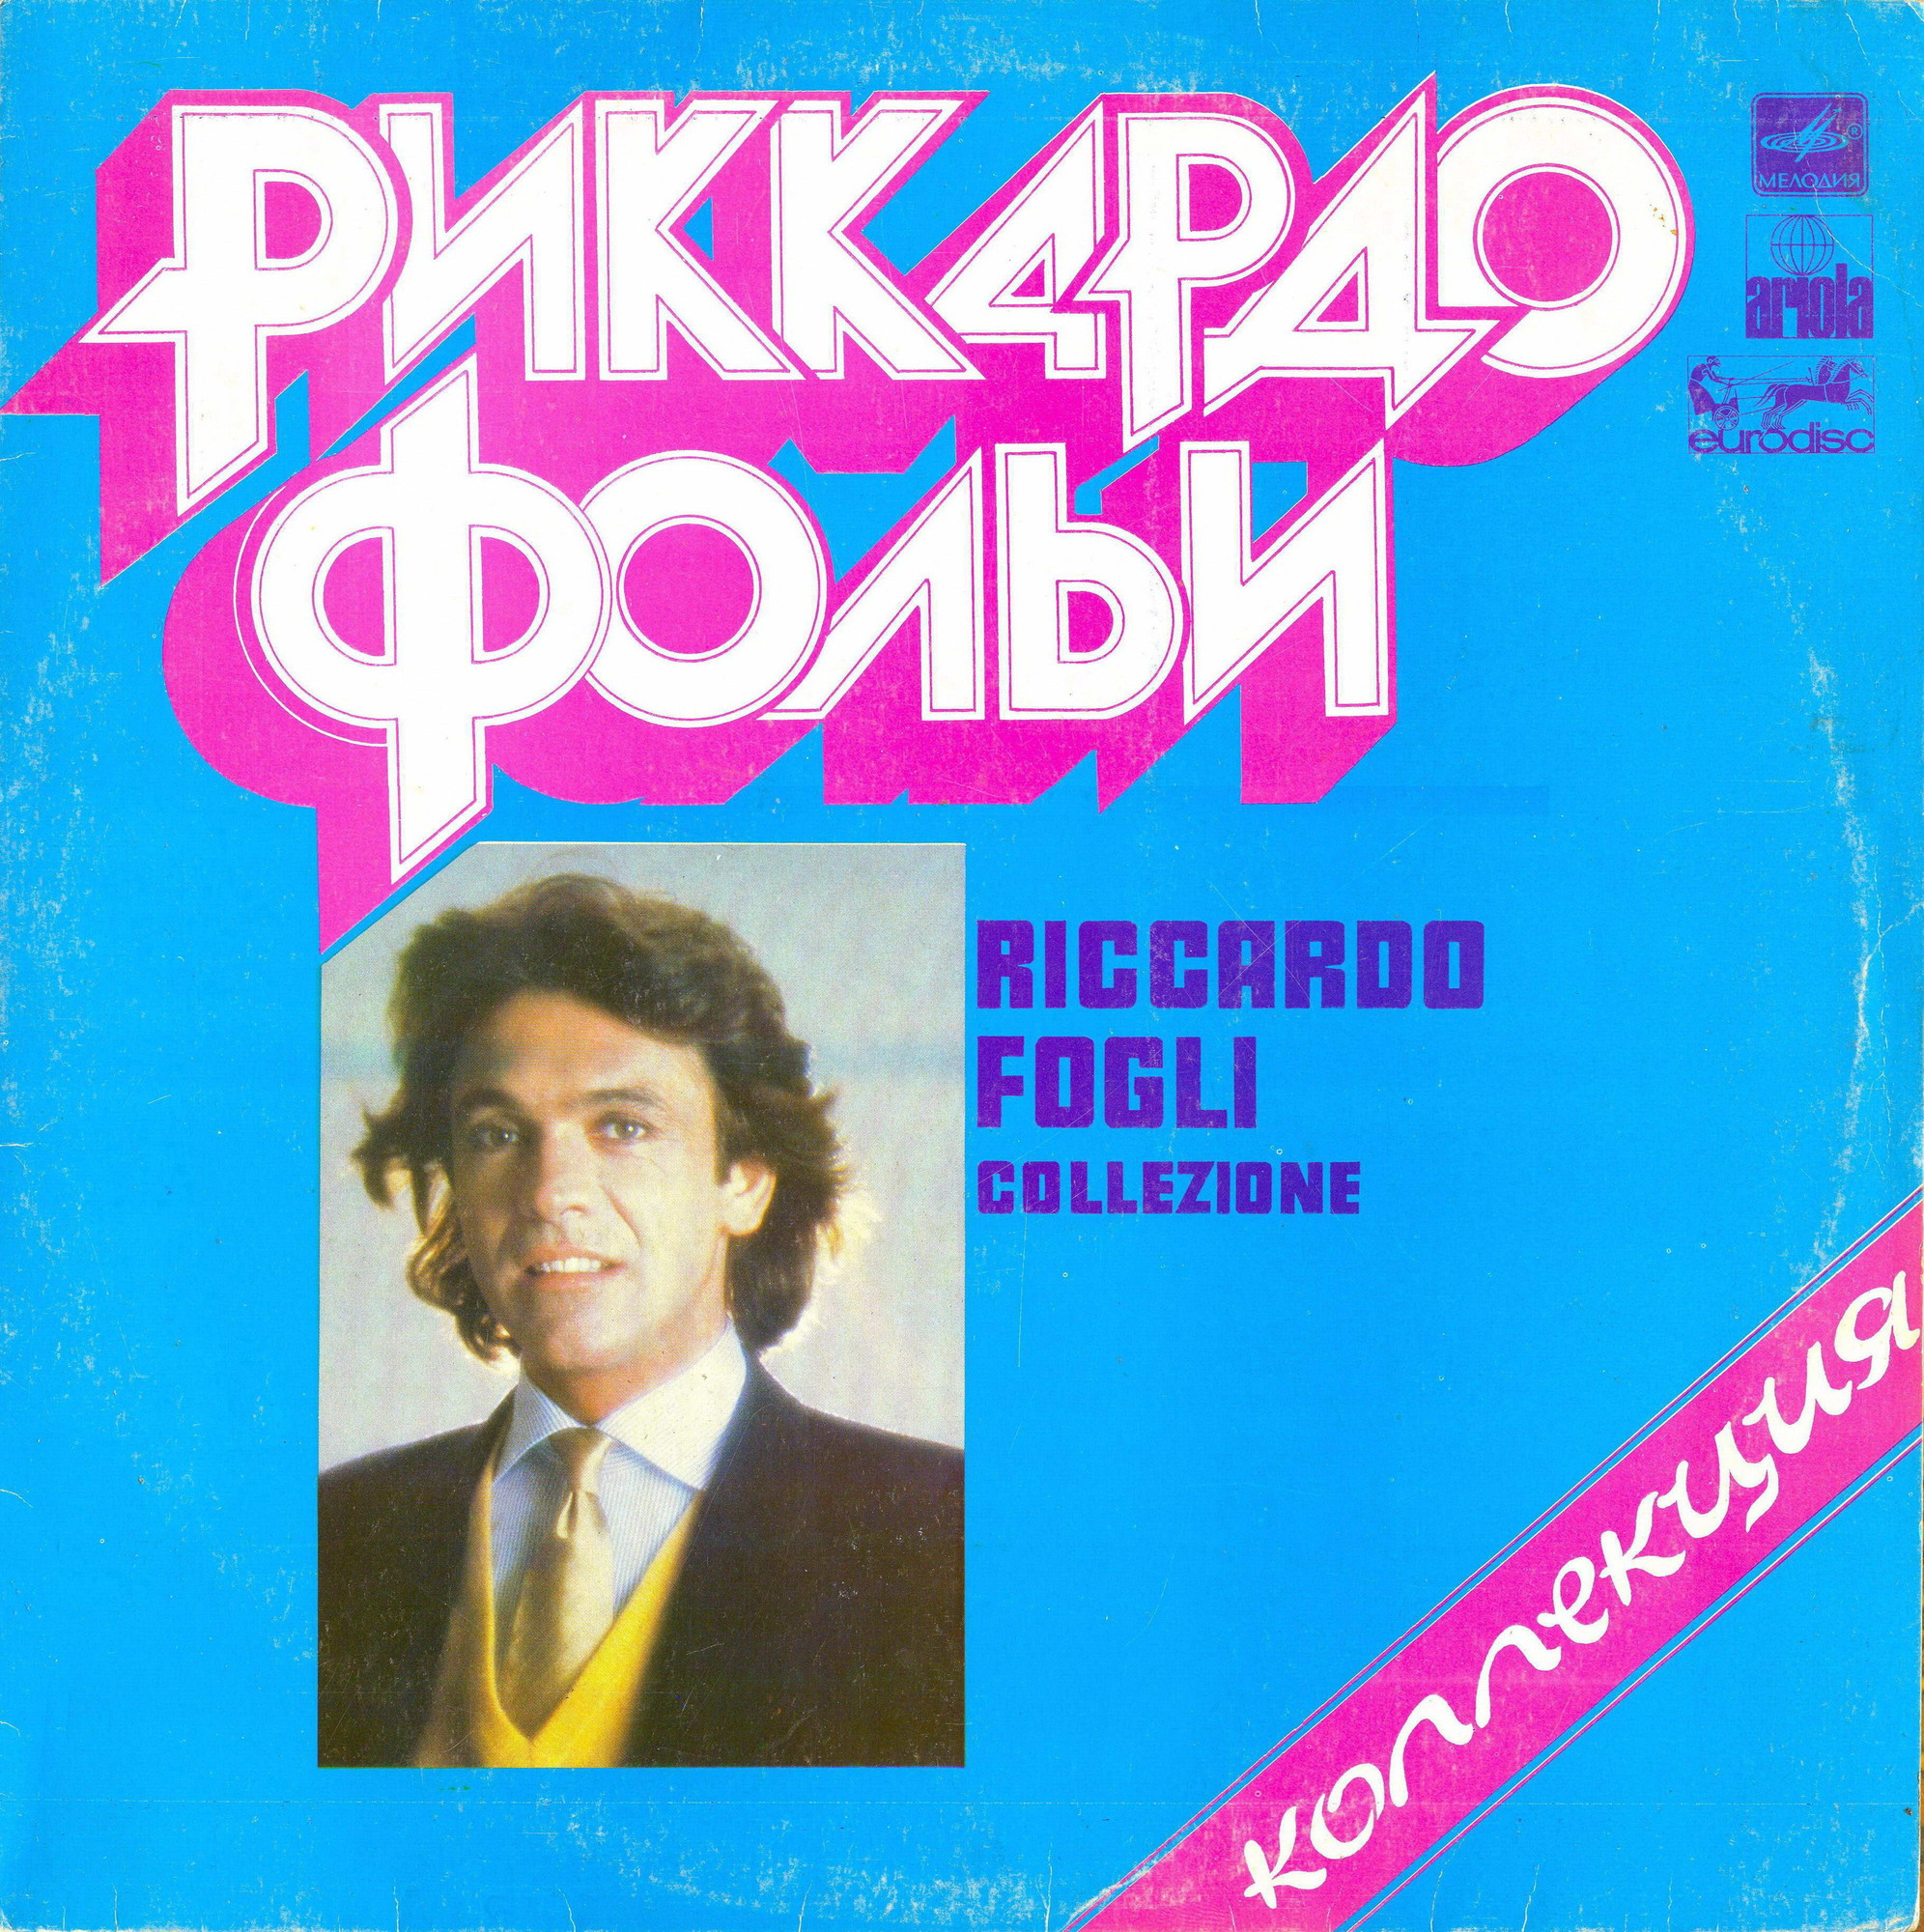 РИККАРДО ФОЛЬИ. Riccardo Fogli - Коллекция